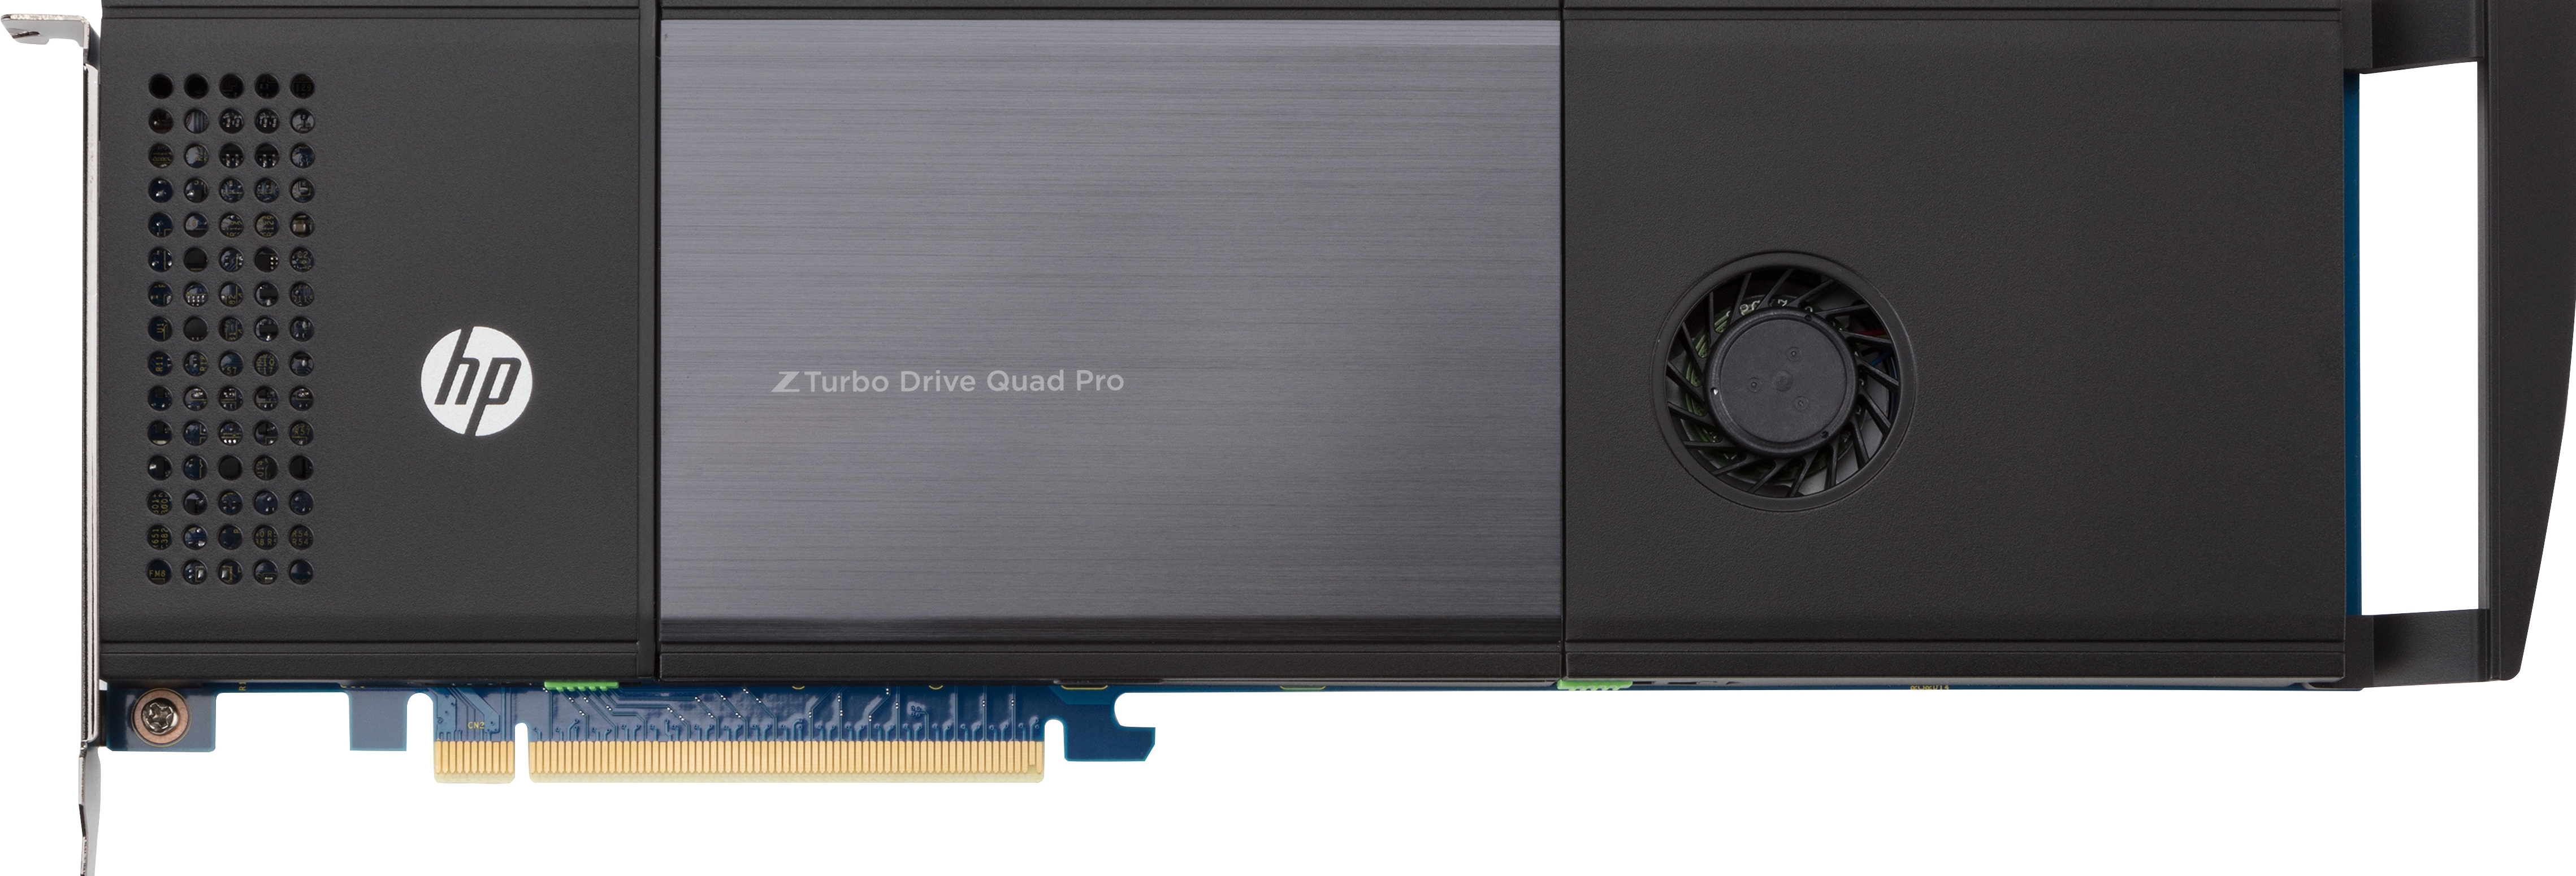 HP Z Turbo Drive Quad Pro - SSD